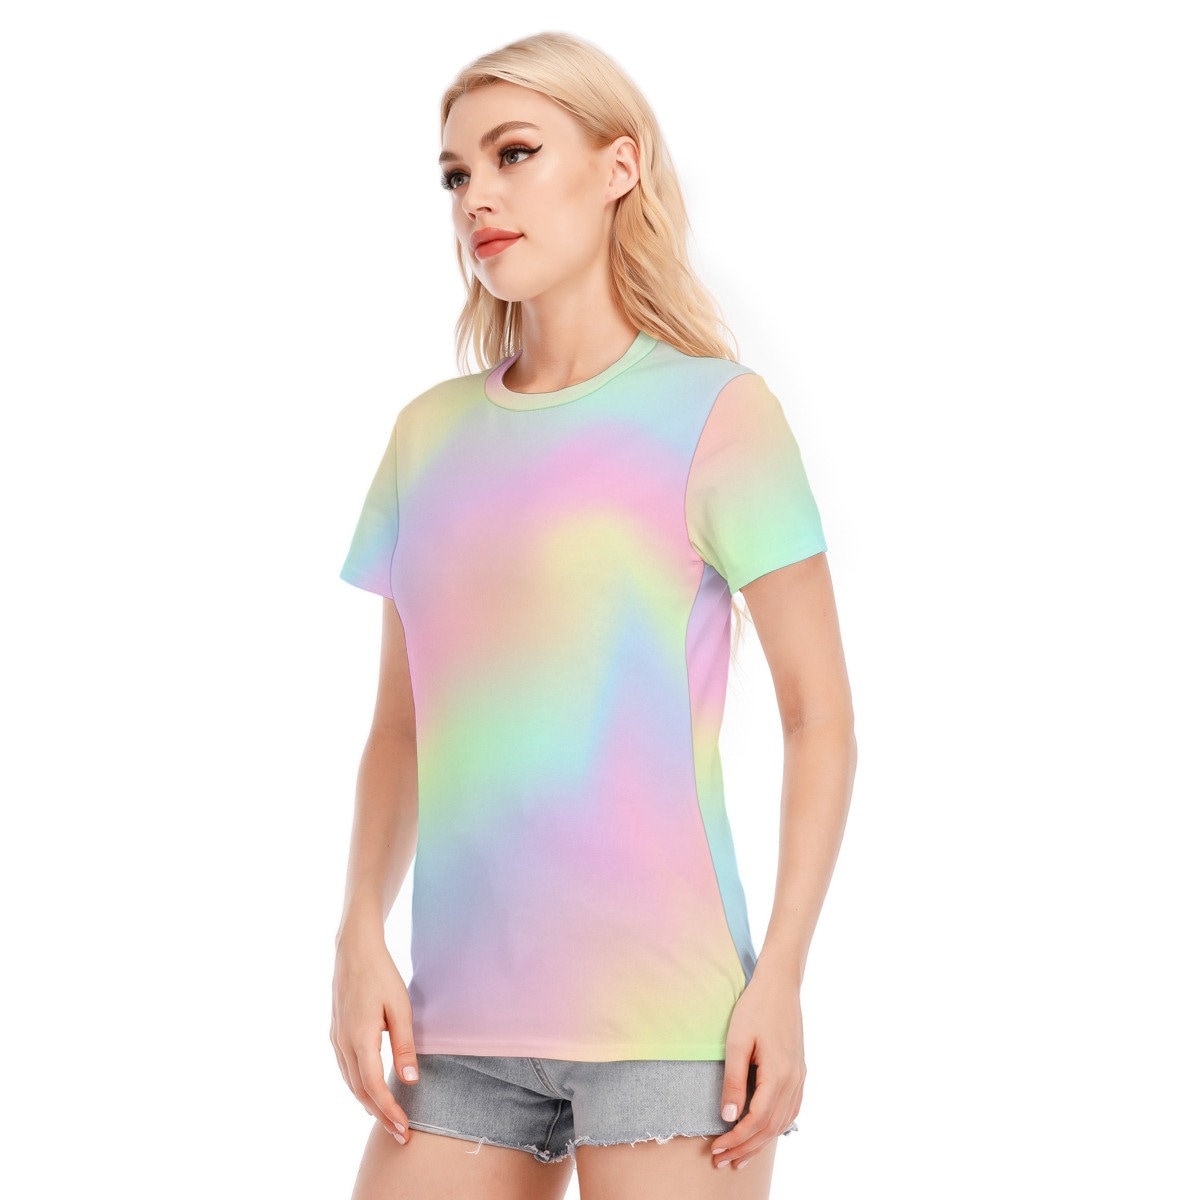 Ombre Top, Rainbow Tops, Ombre Tshirt, Rainbow T-shirt, Womens Tshirts, Unique Tshirt, Ombre T-shirt, Abstract Tshirt, Artistique Tshirt